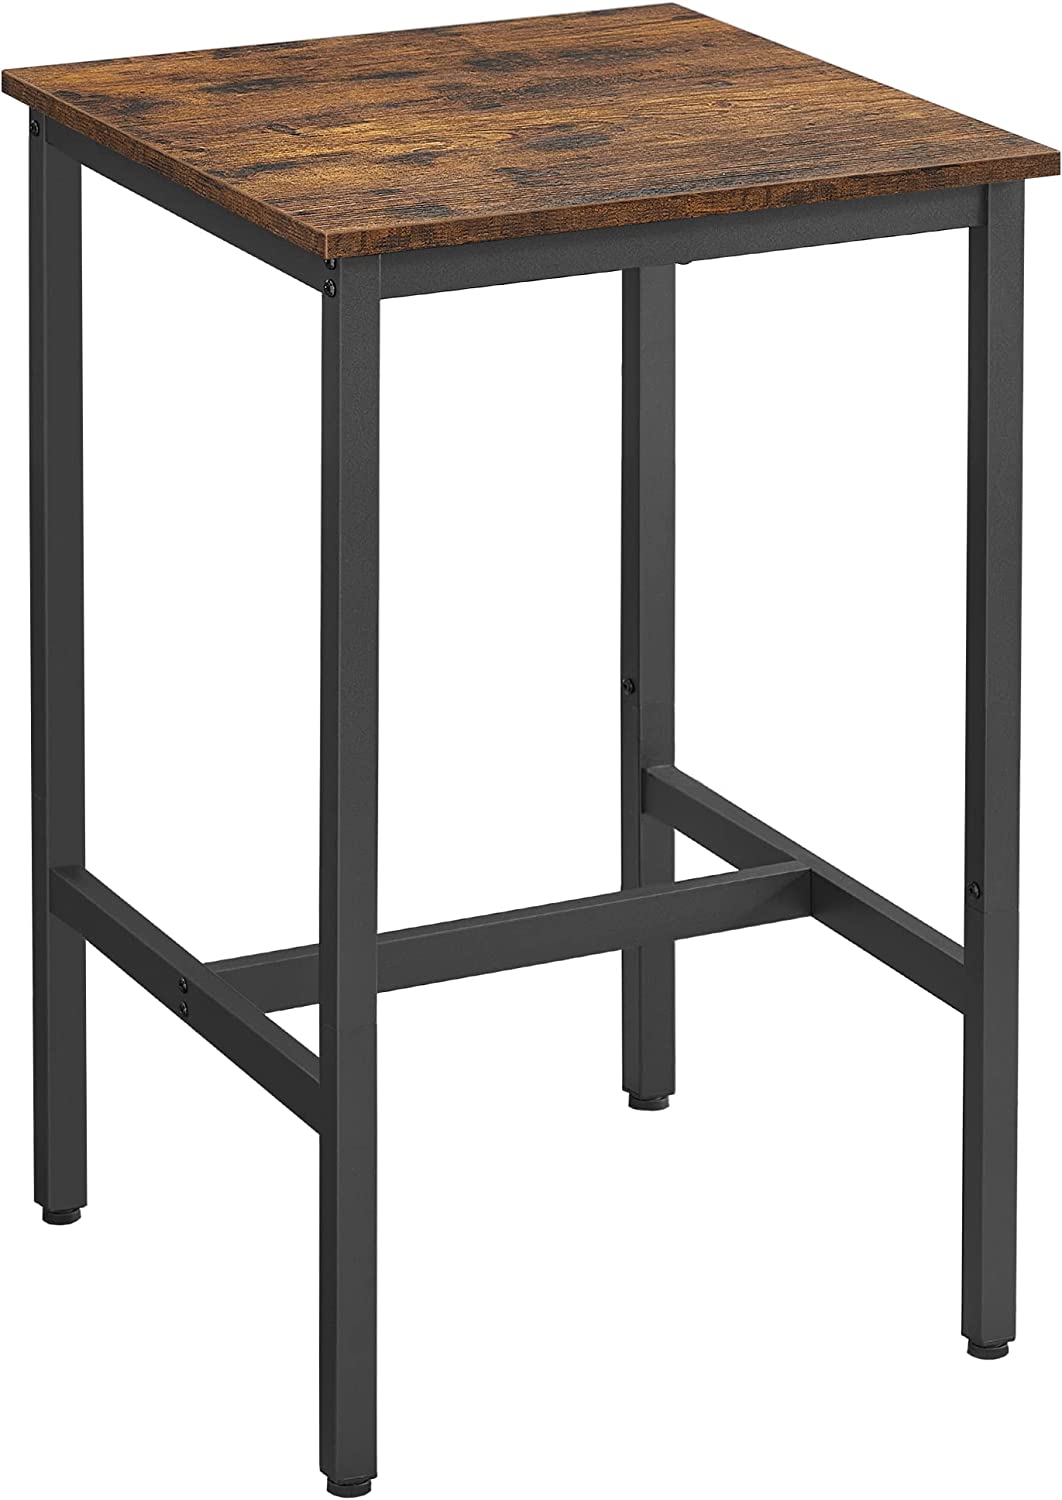 Table haute de bar carrée pour cuisine, style industriel, plateau en bois, avec cadre acier LBT25X